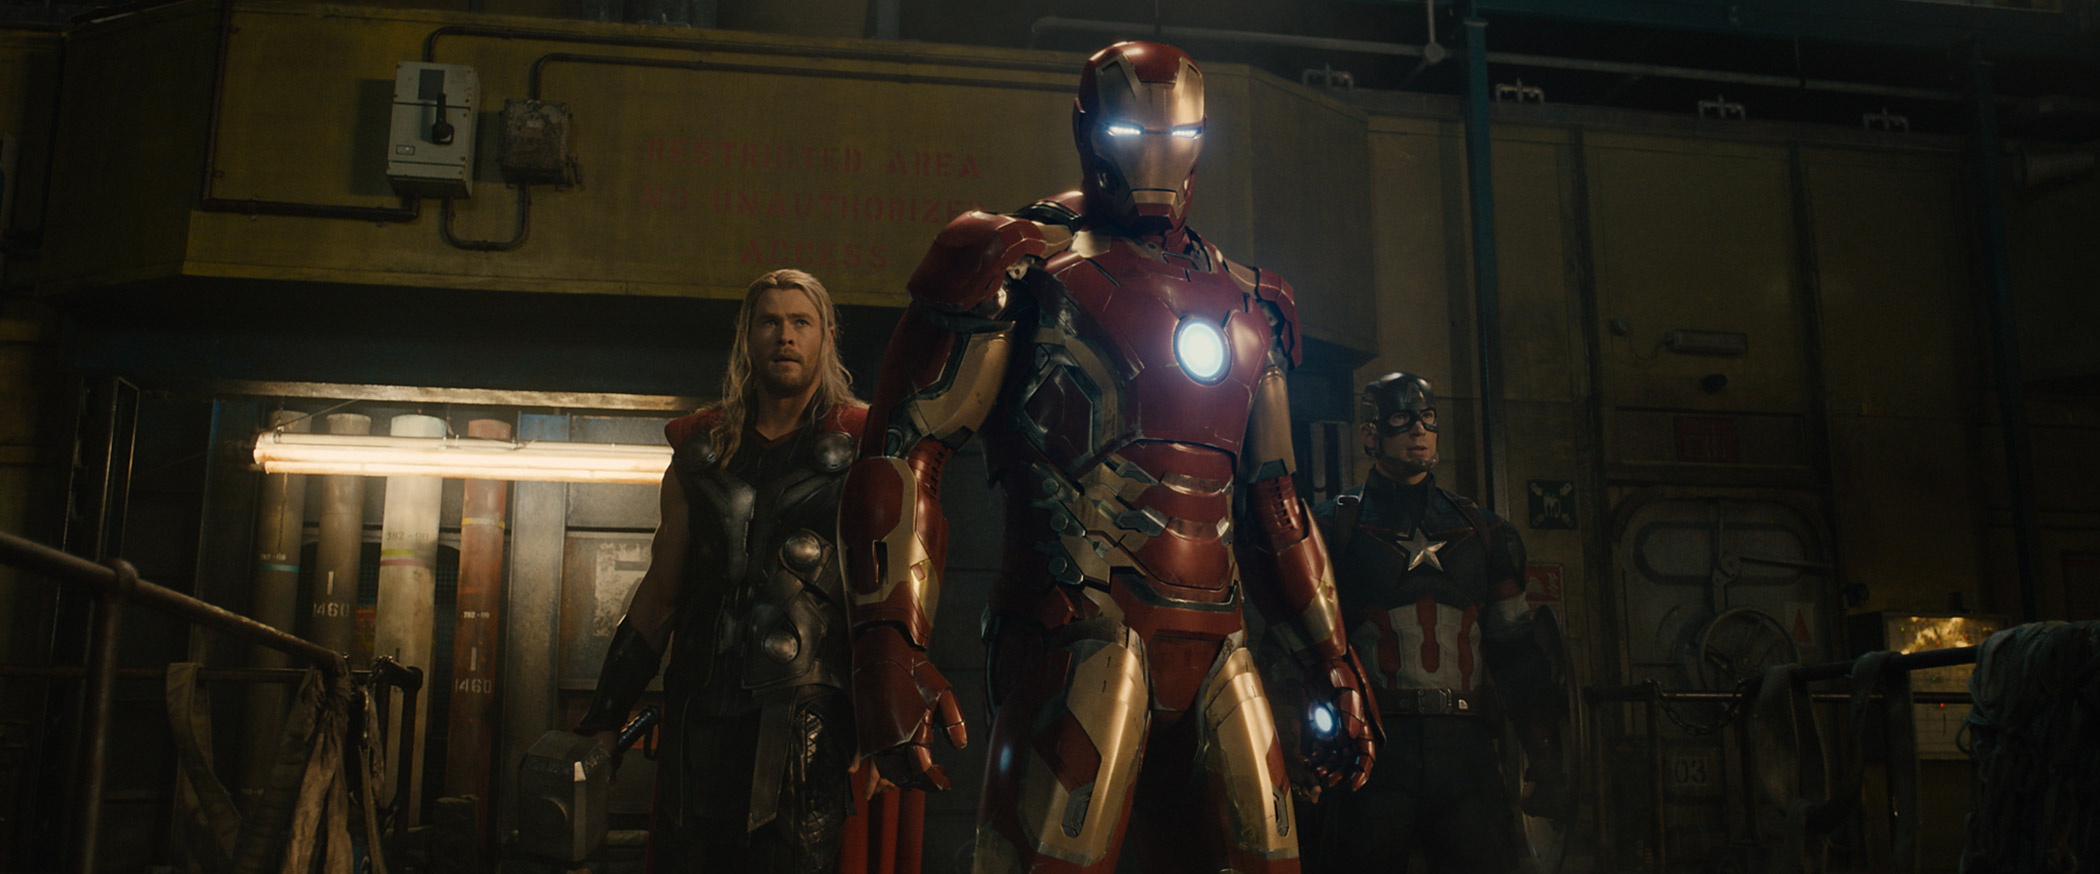 Chris Hemsworth, Robert Downey Jr. and Chris Evans star in <i>Avengers: Age of Ultron</i> (Marvel/Disney)